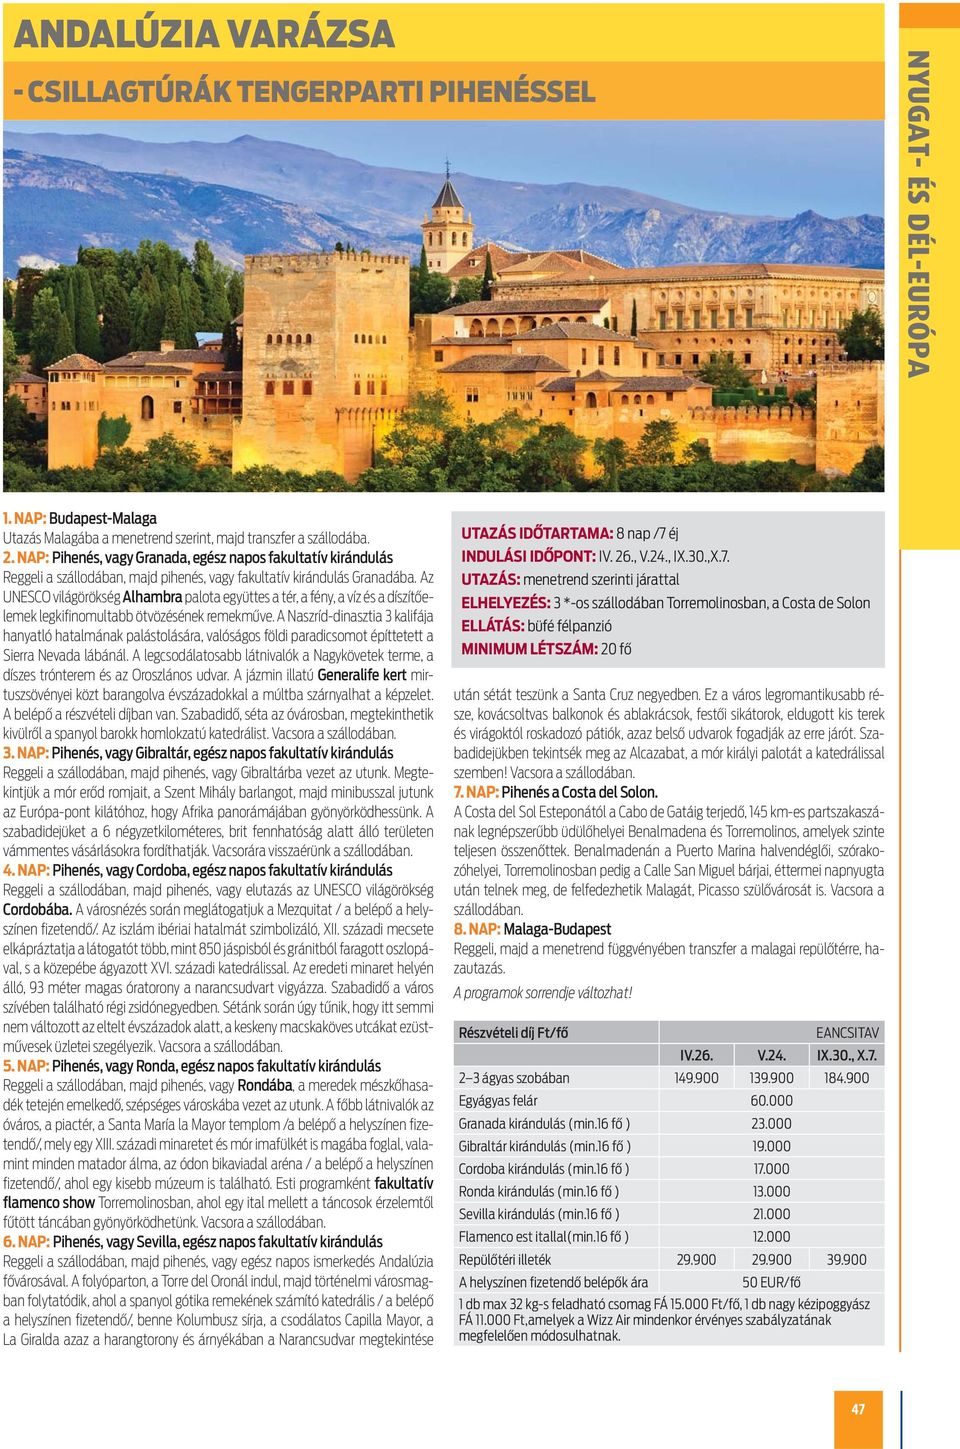 Az UNESCO világörökség Alhambra palota együttes a tér, a fény, a víz és a díszítőelemek legkifinomultabb ötvözésének remekműve.